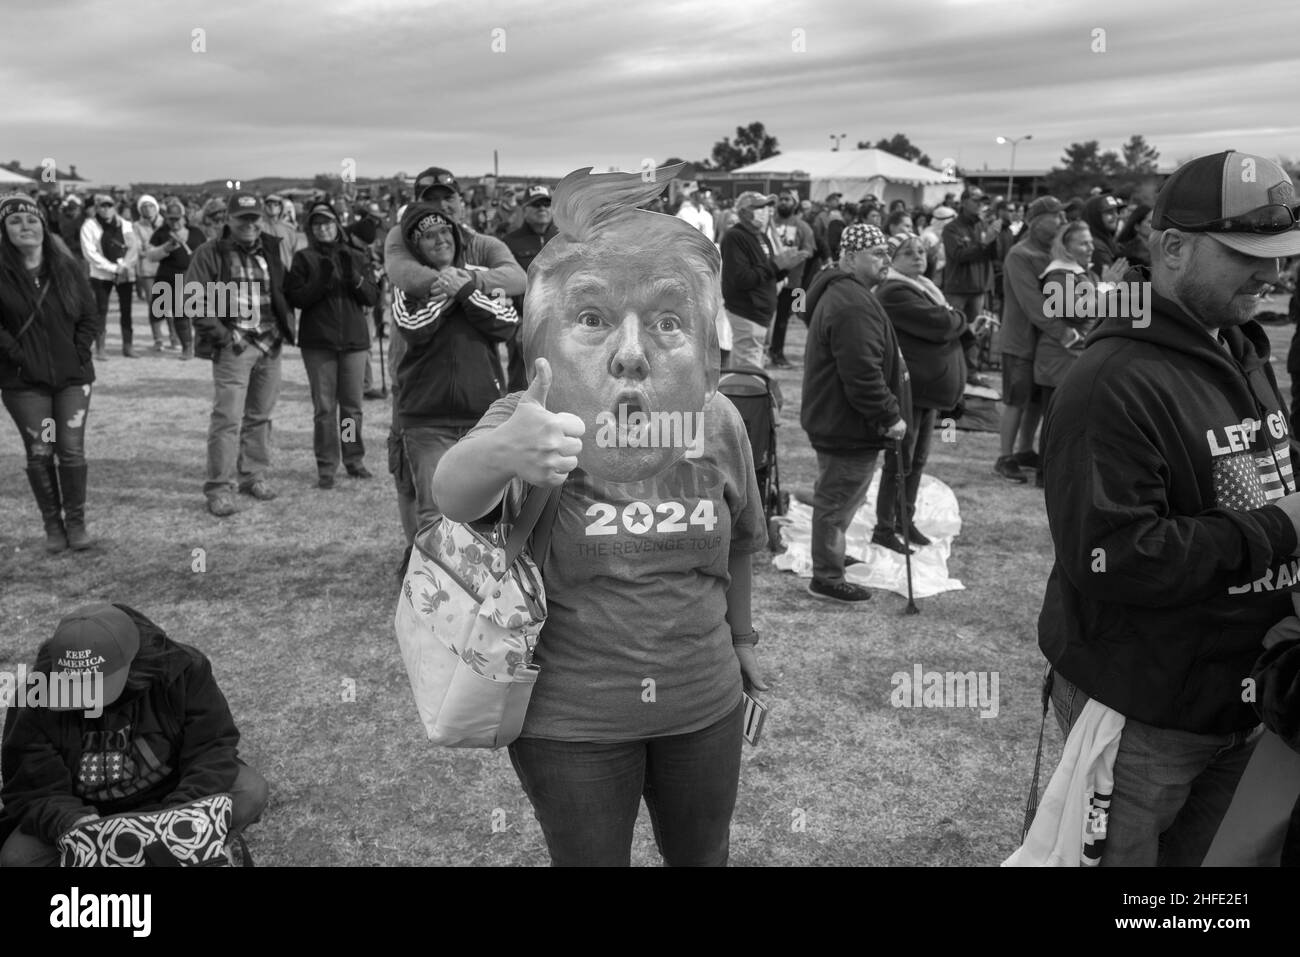 Il sostenitore di Donald Trump indossa una maschera dell’ex presidente in un raduno a Firenze, Arizona. Gennaio 15, 2022. Foto Stock